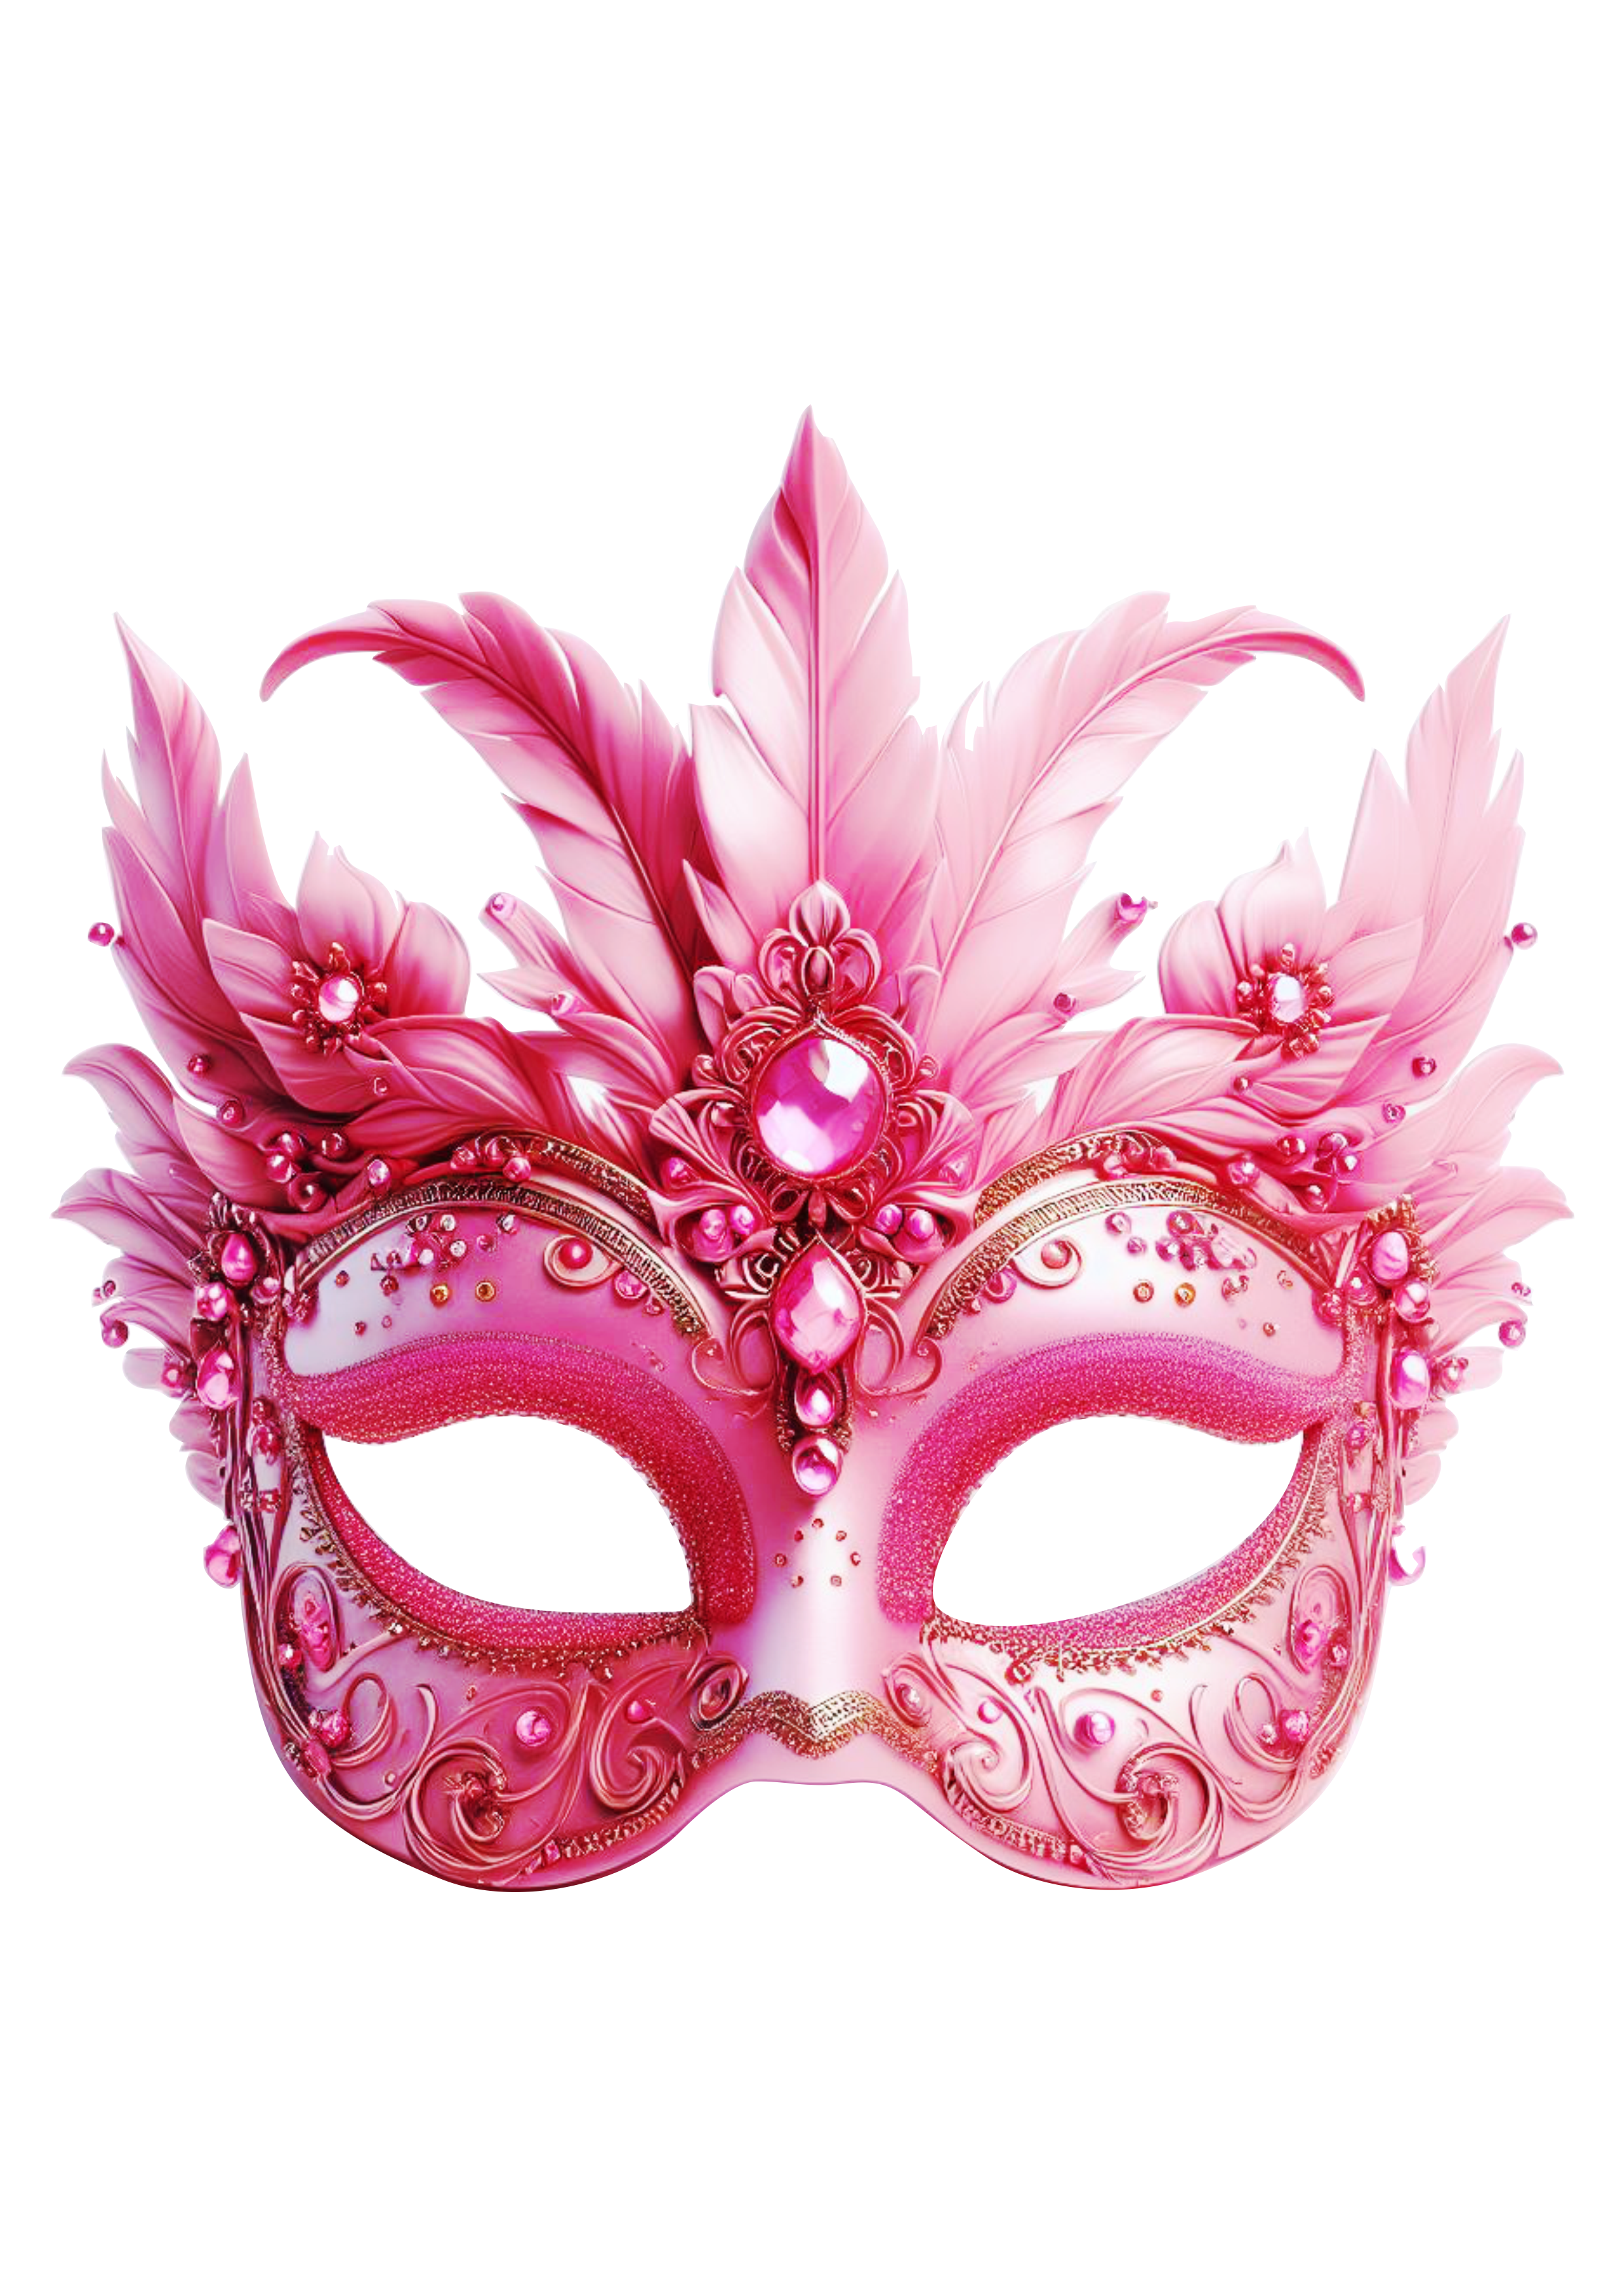 Máscara de carnaval brilhante joias baile de máscaras png image rosa penas